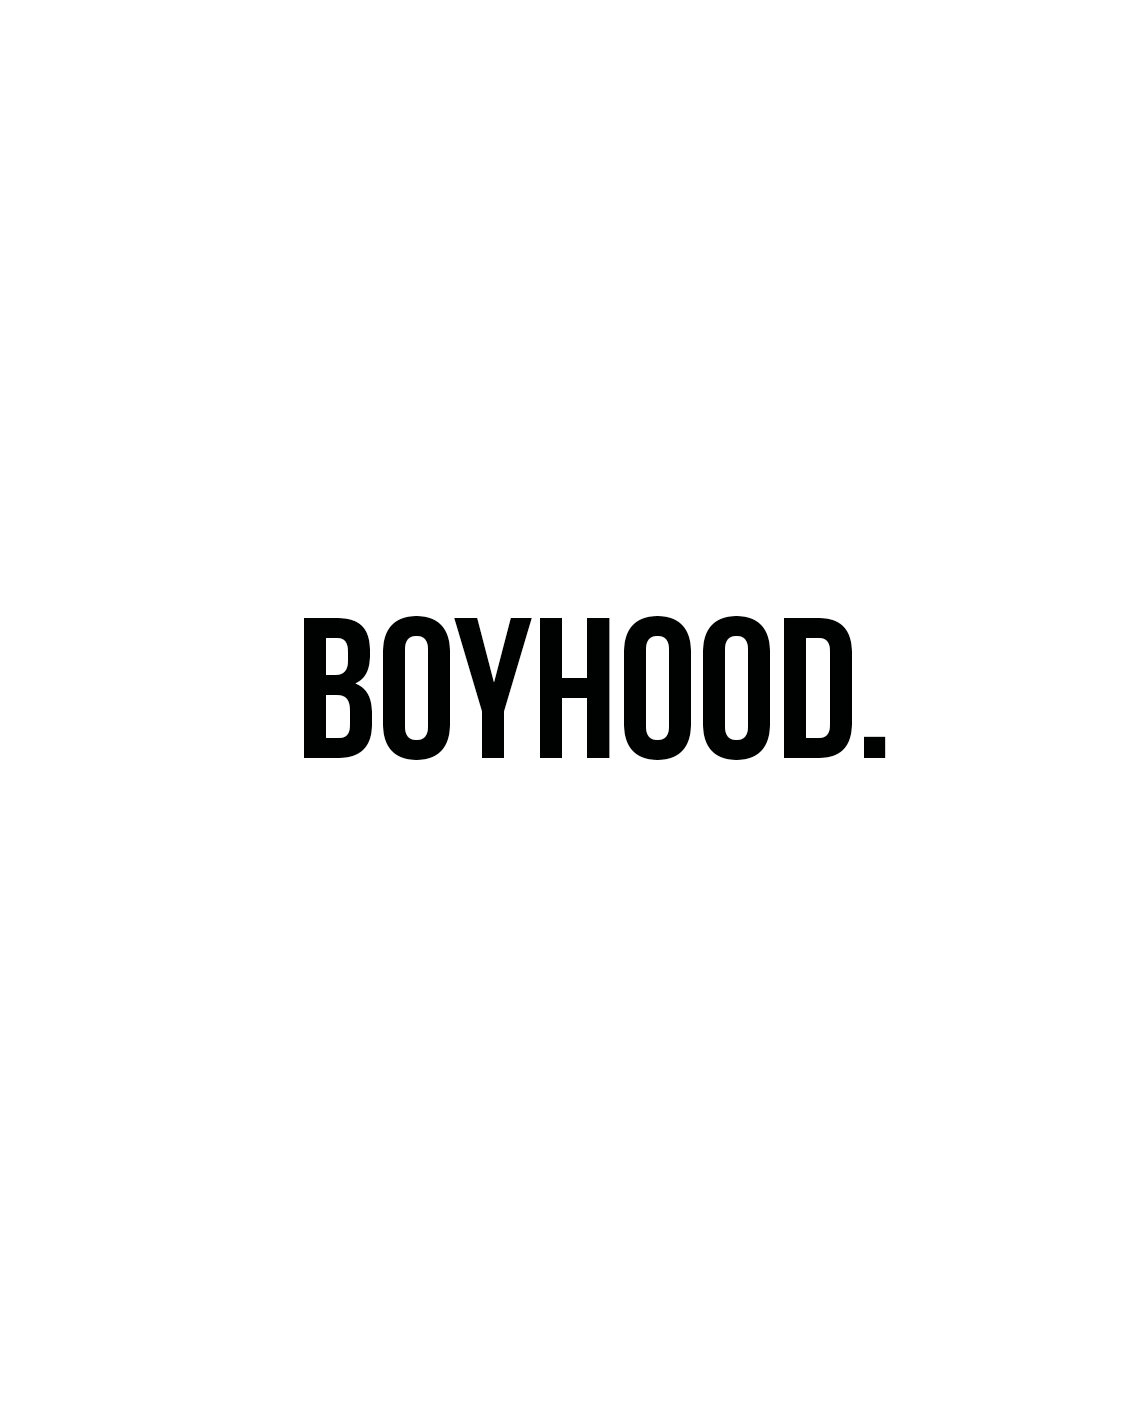 'BOYHOOD' — FAC